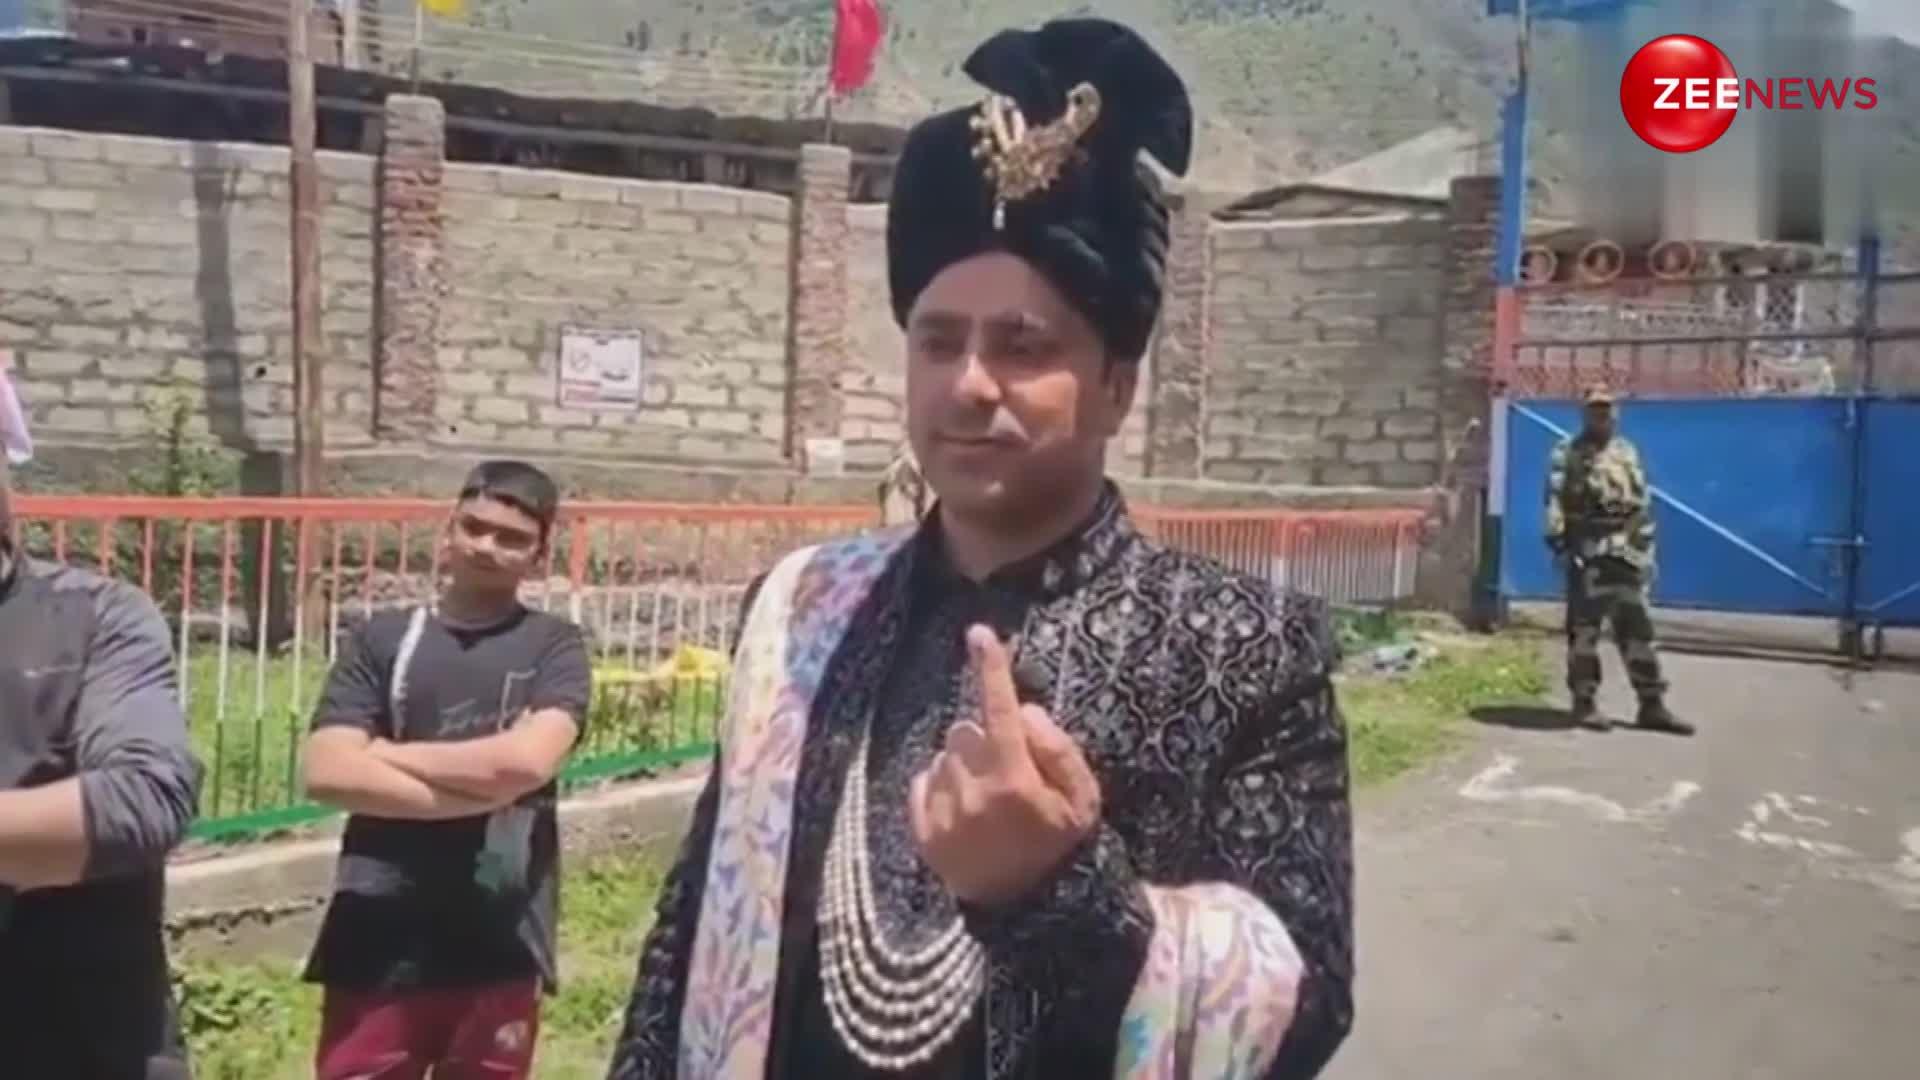 शेरवानी पहन, पगड़ी बांध..मुस्कुराते हुए वोट डालने पहुंचे दूल्हे 'राजा', वायरल हुआ जम्मू-कश्मीर का ये वीडियो